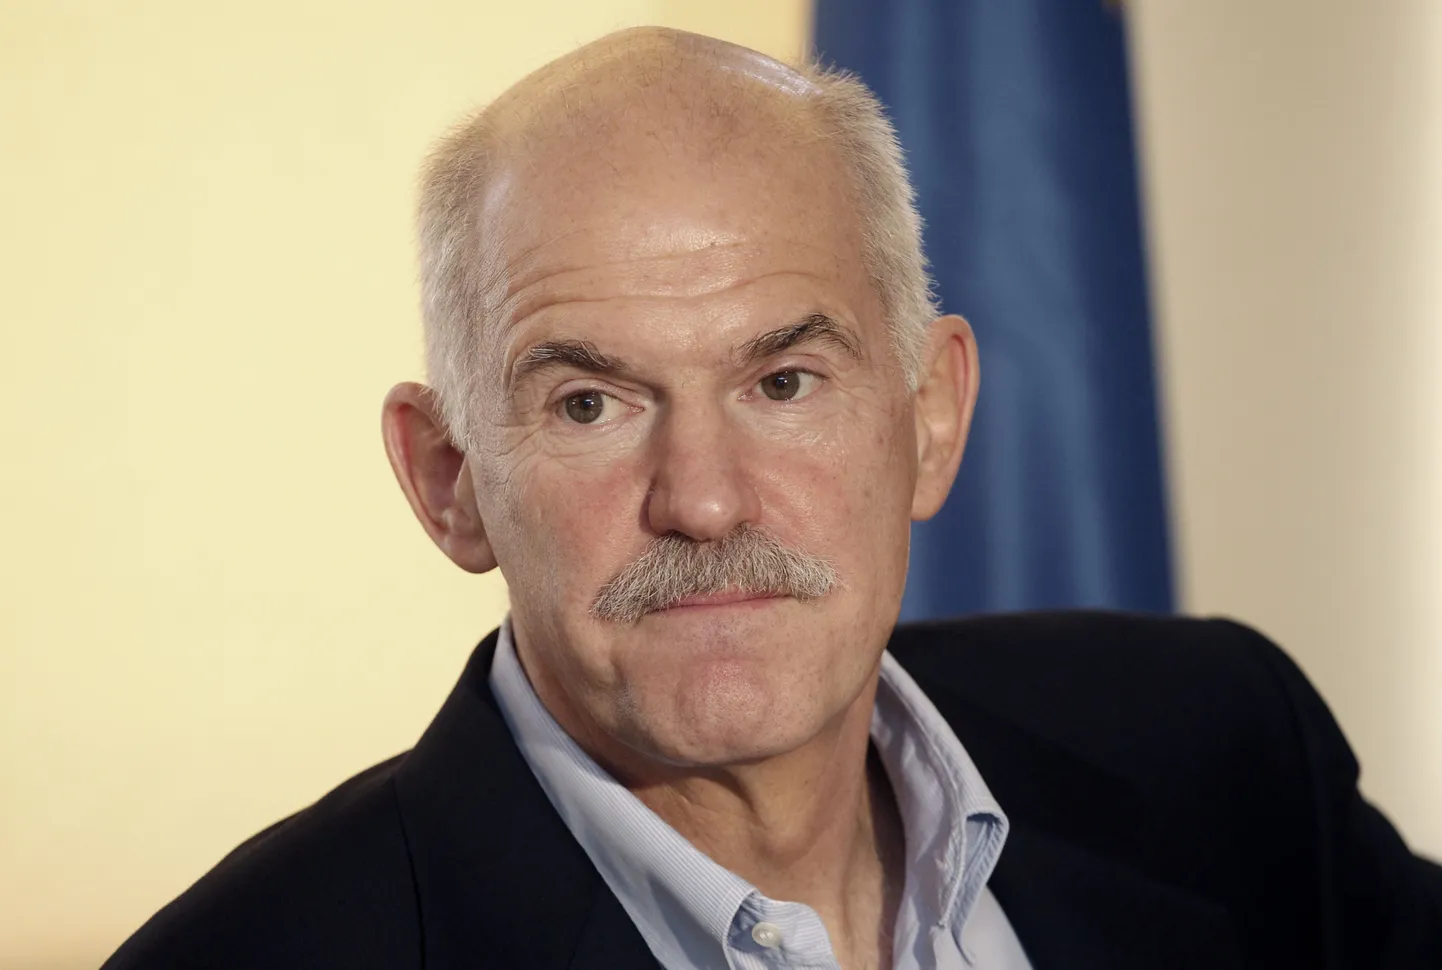 Kreeka peaminister George Papandreou.